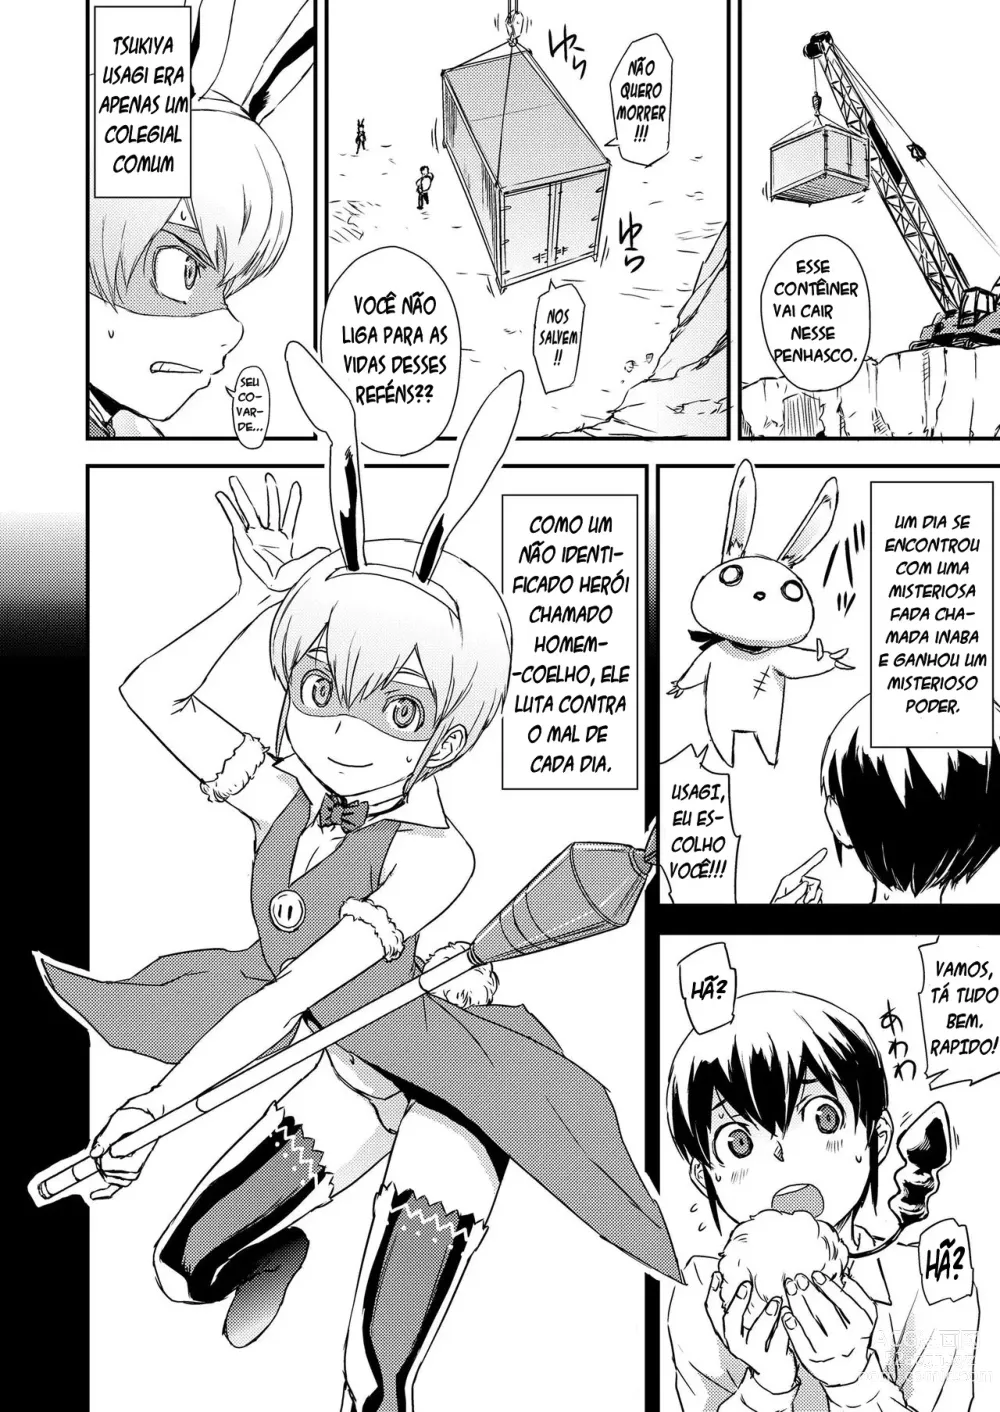 Page 2 of manga Vença! Homem-coelho